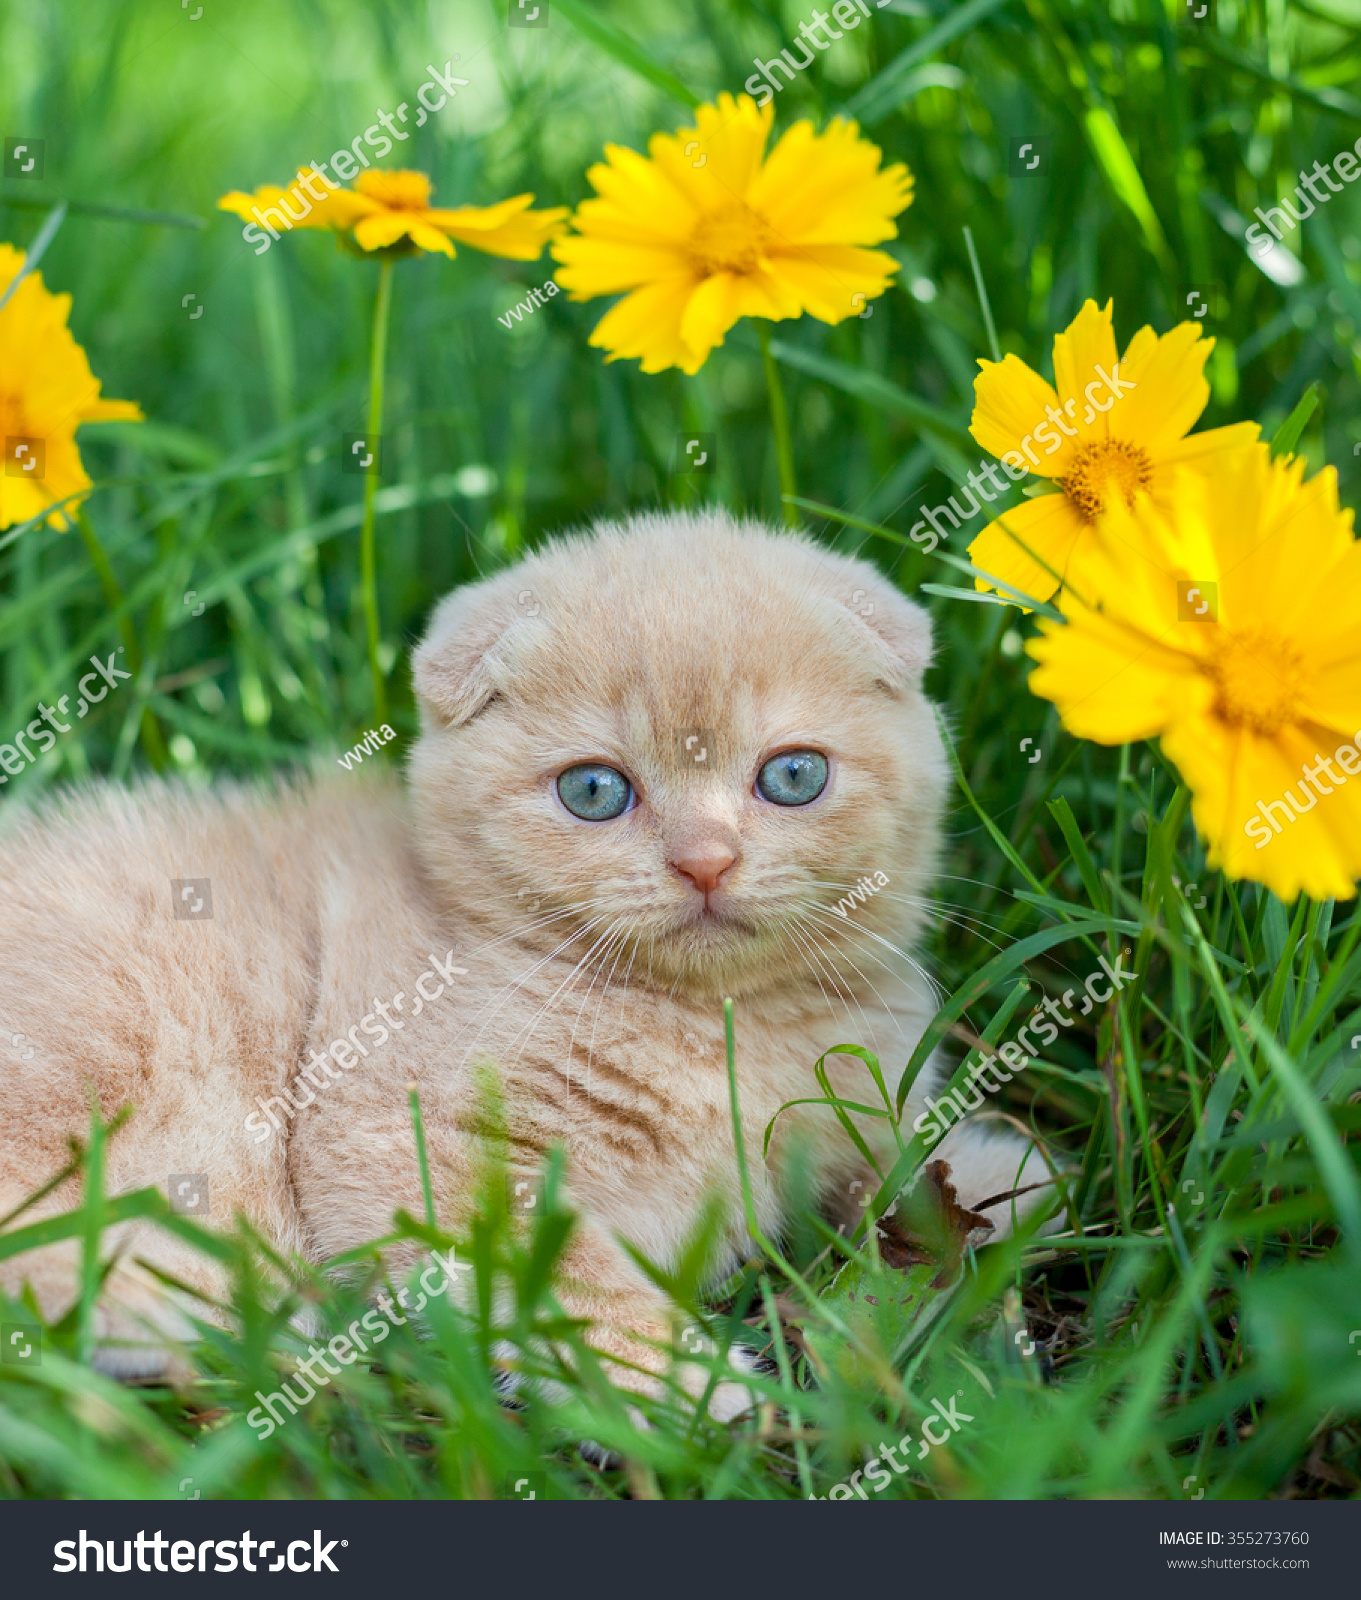 Cute Little Kitten Sitting Flower Meadow Stock Photo 355273760 ...